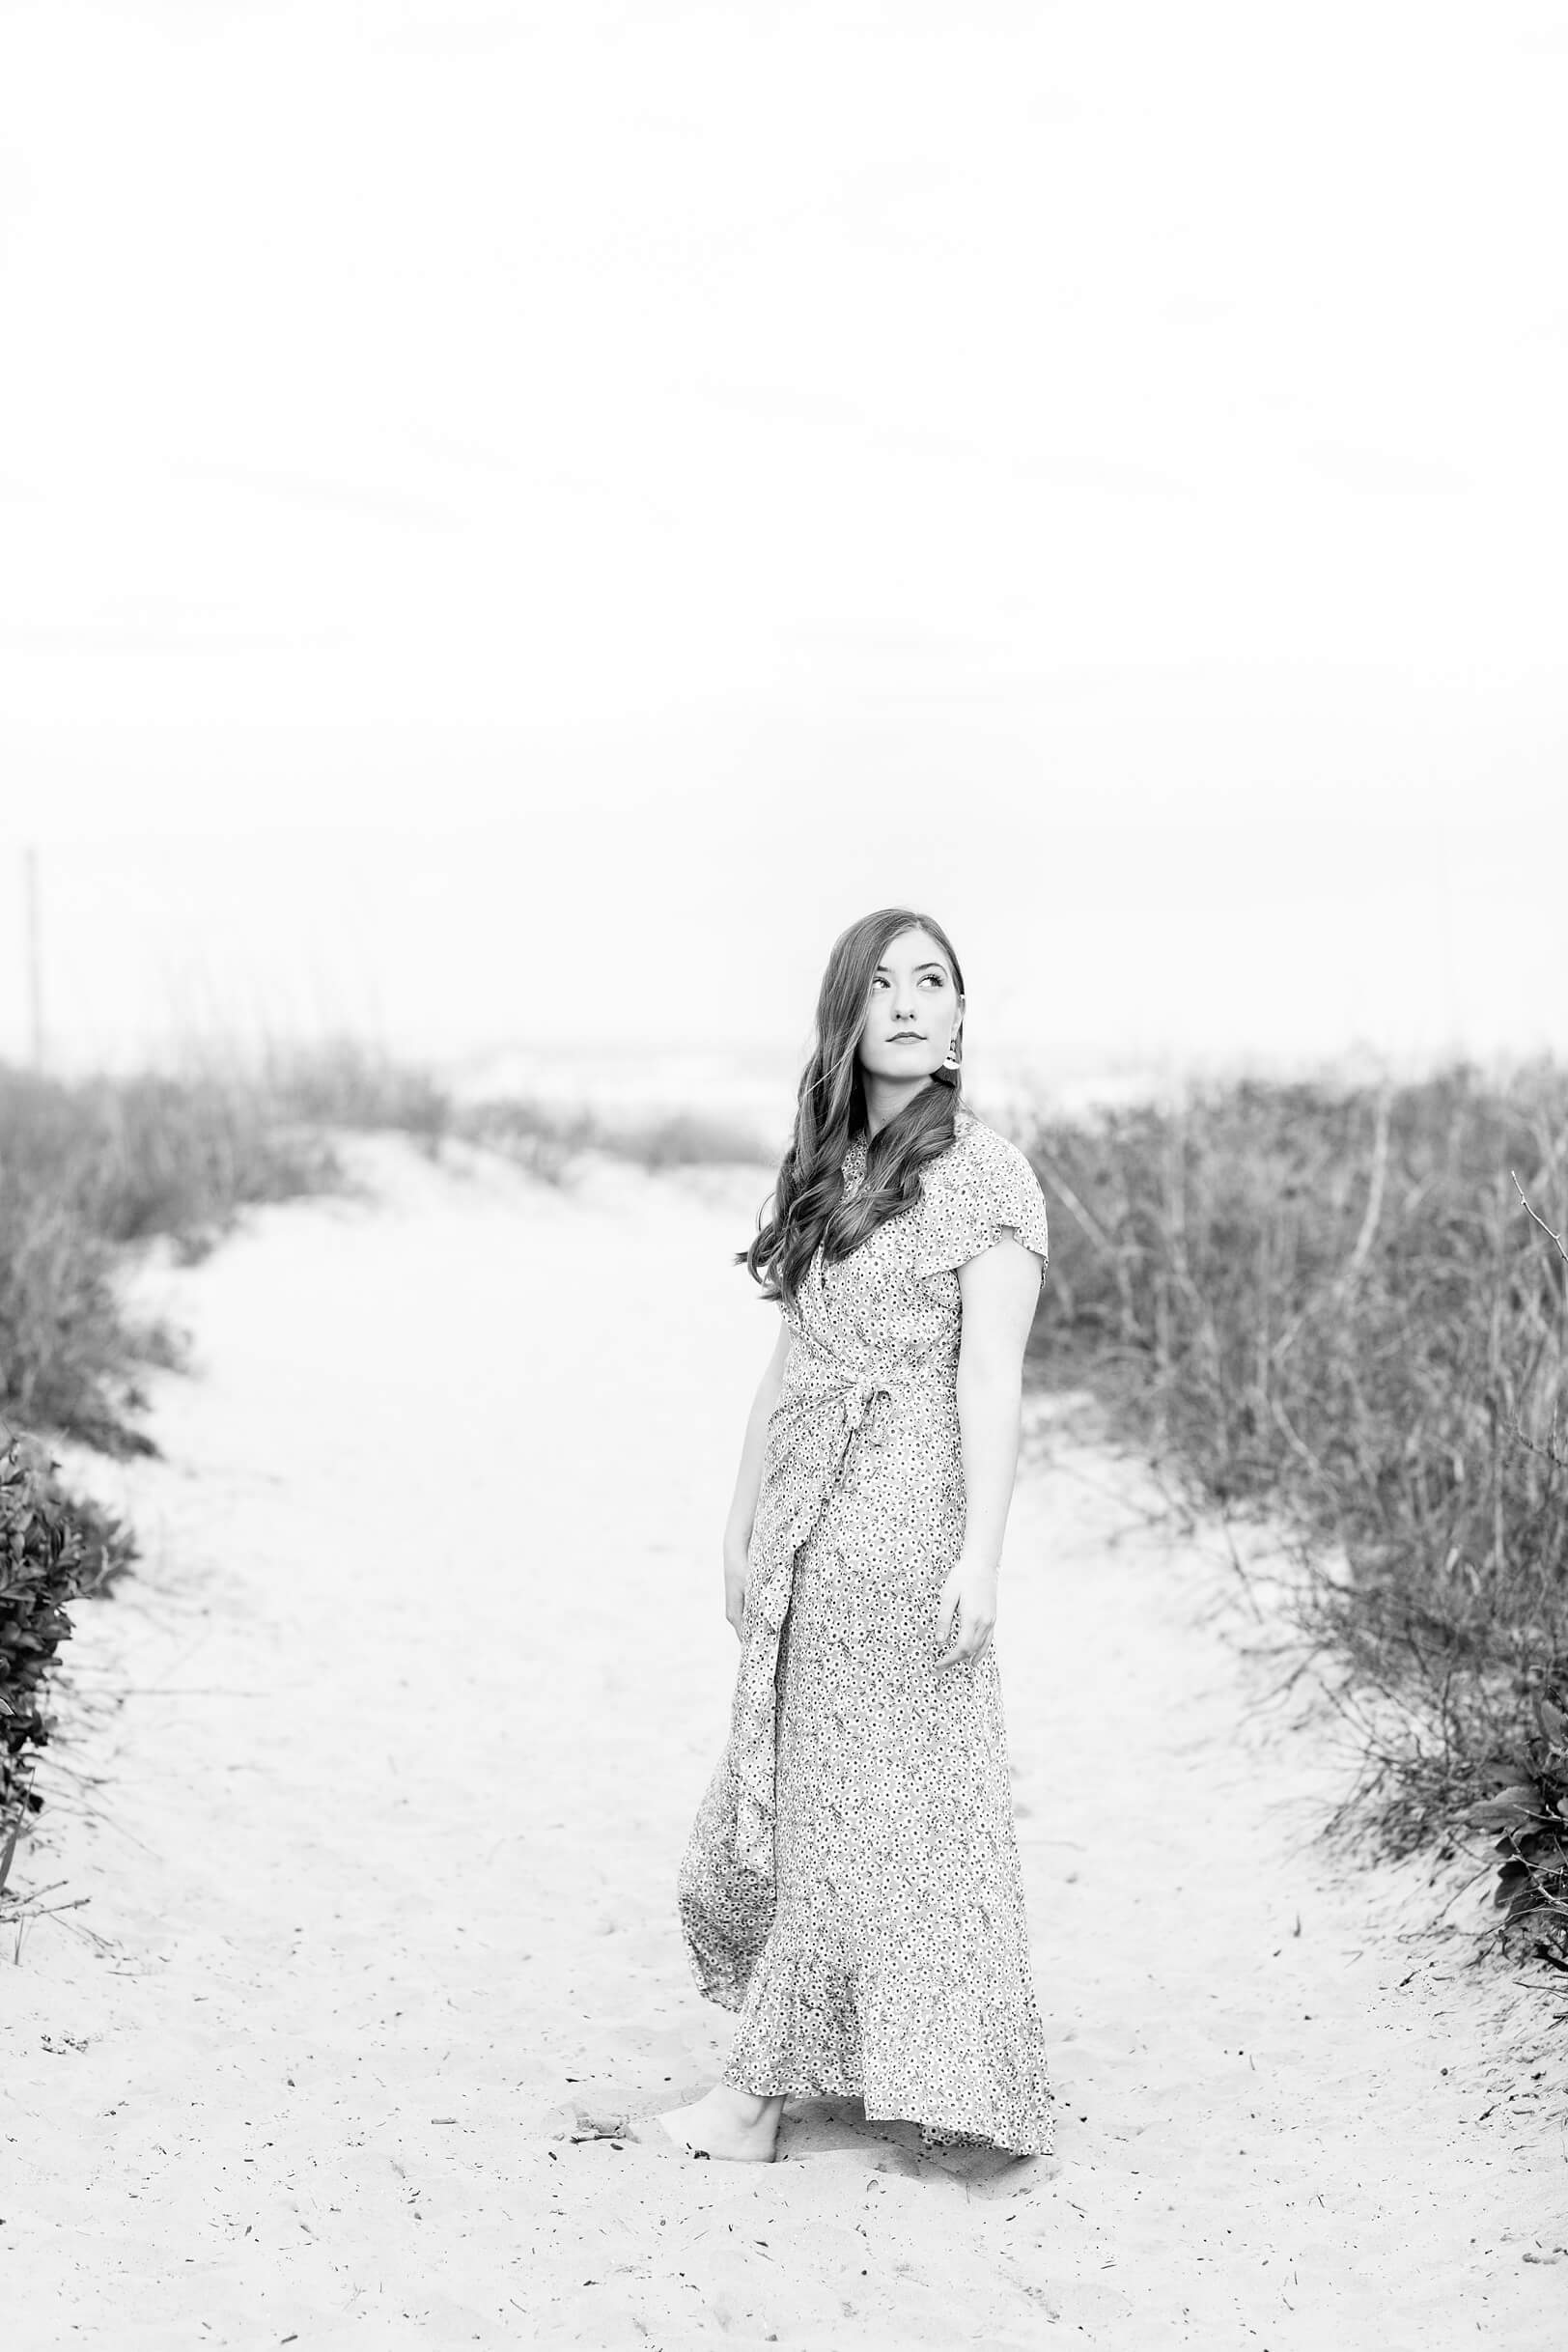 Girl at Folly Beach dunes | Kaitlin Scott Photography